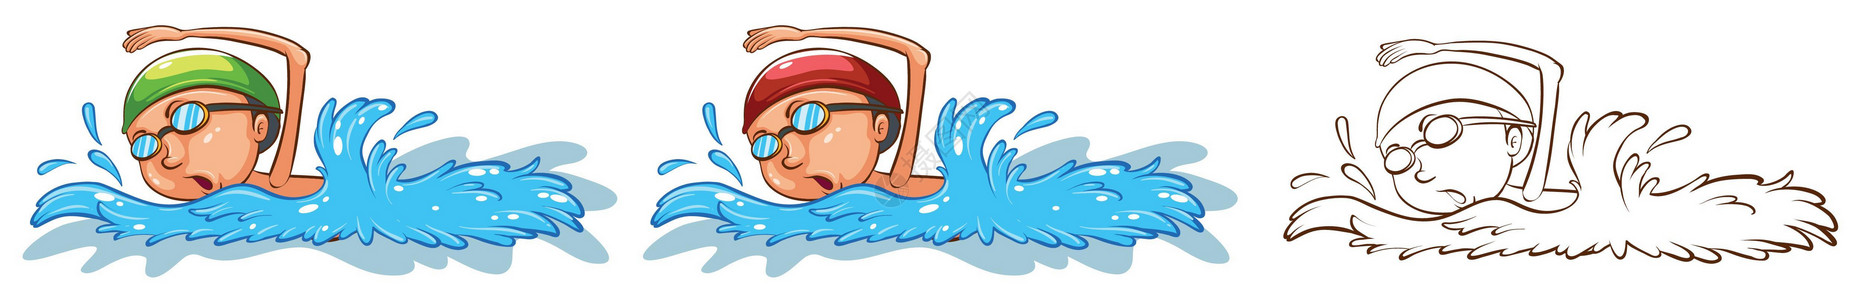 核桃图片薄皮核桃图片男子 swimmin 的涂鸦字符设计图片